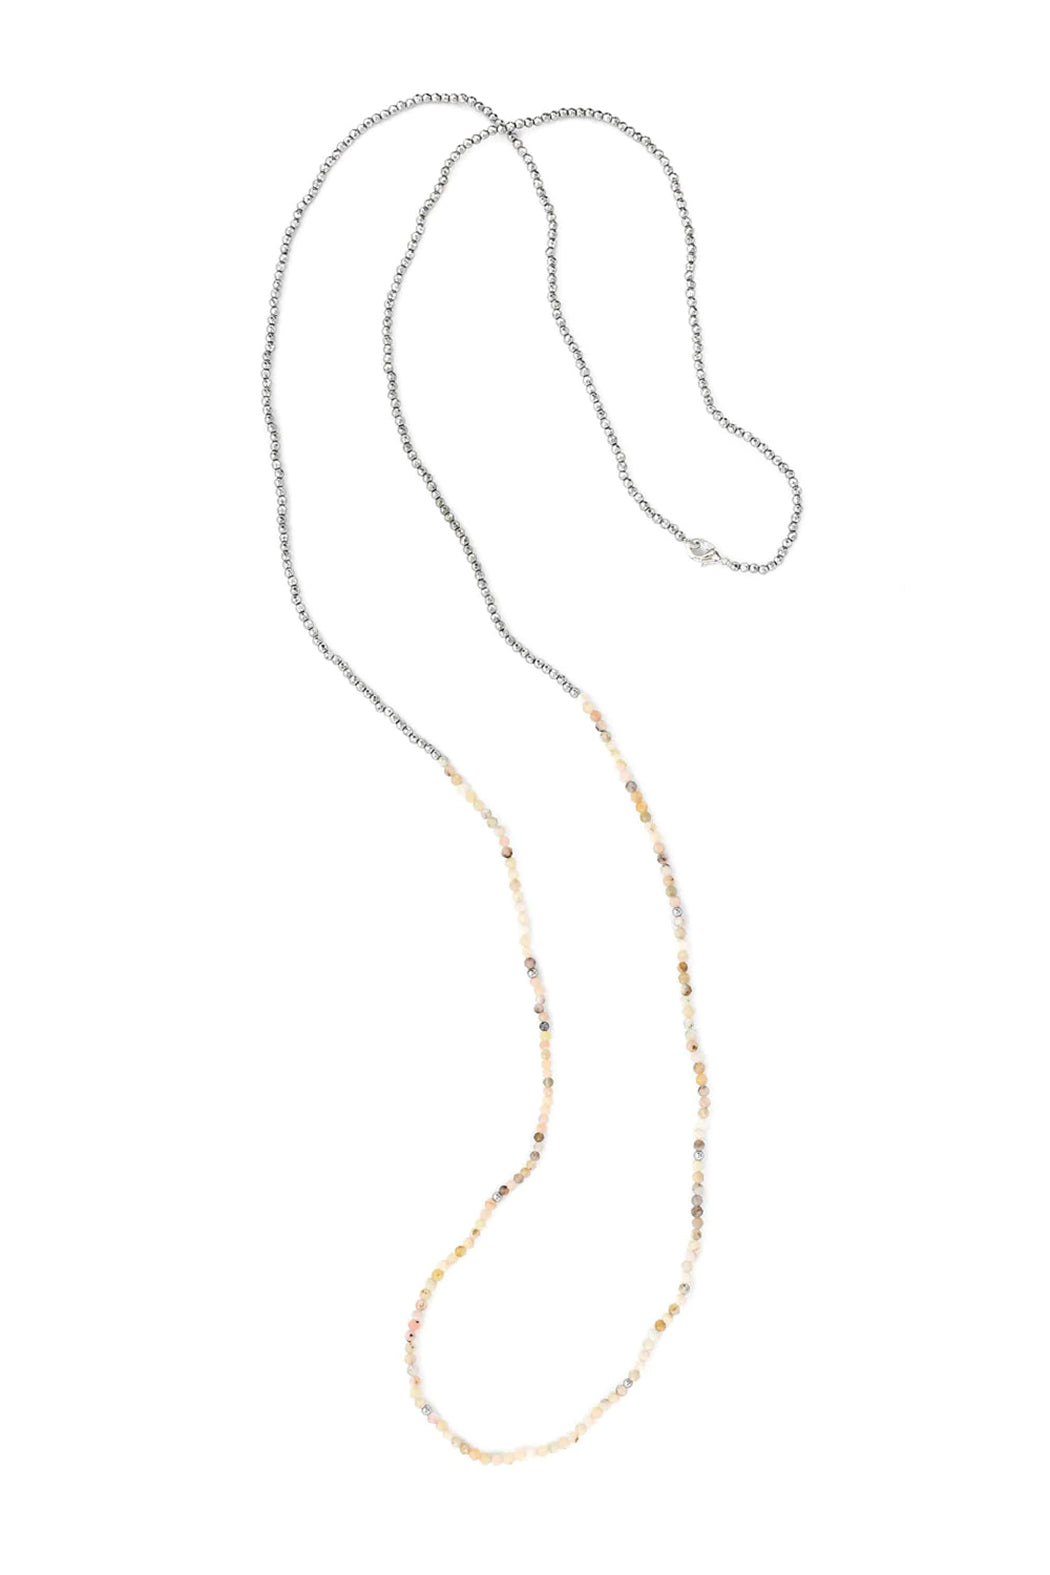 OMG Blings Rhodonite + Hematite Necklace